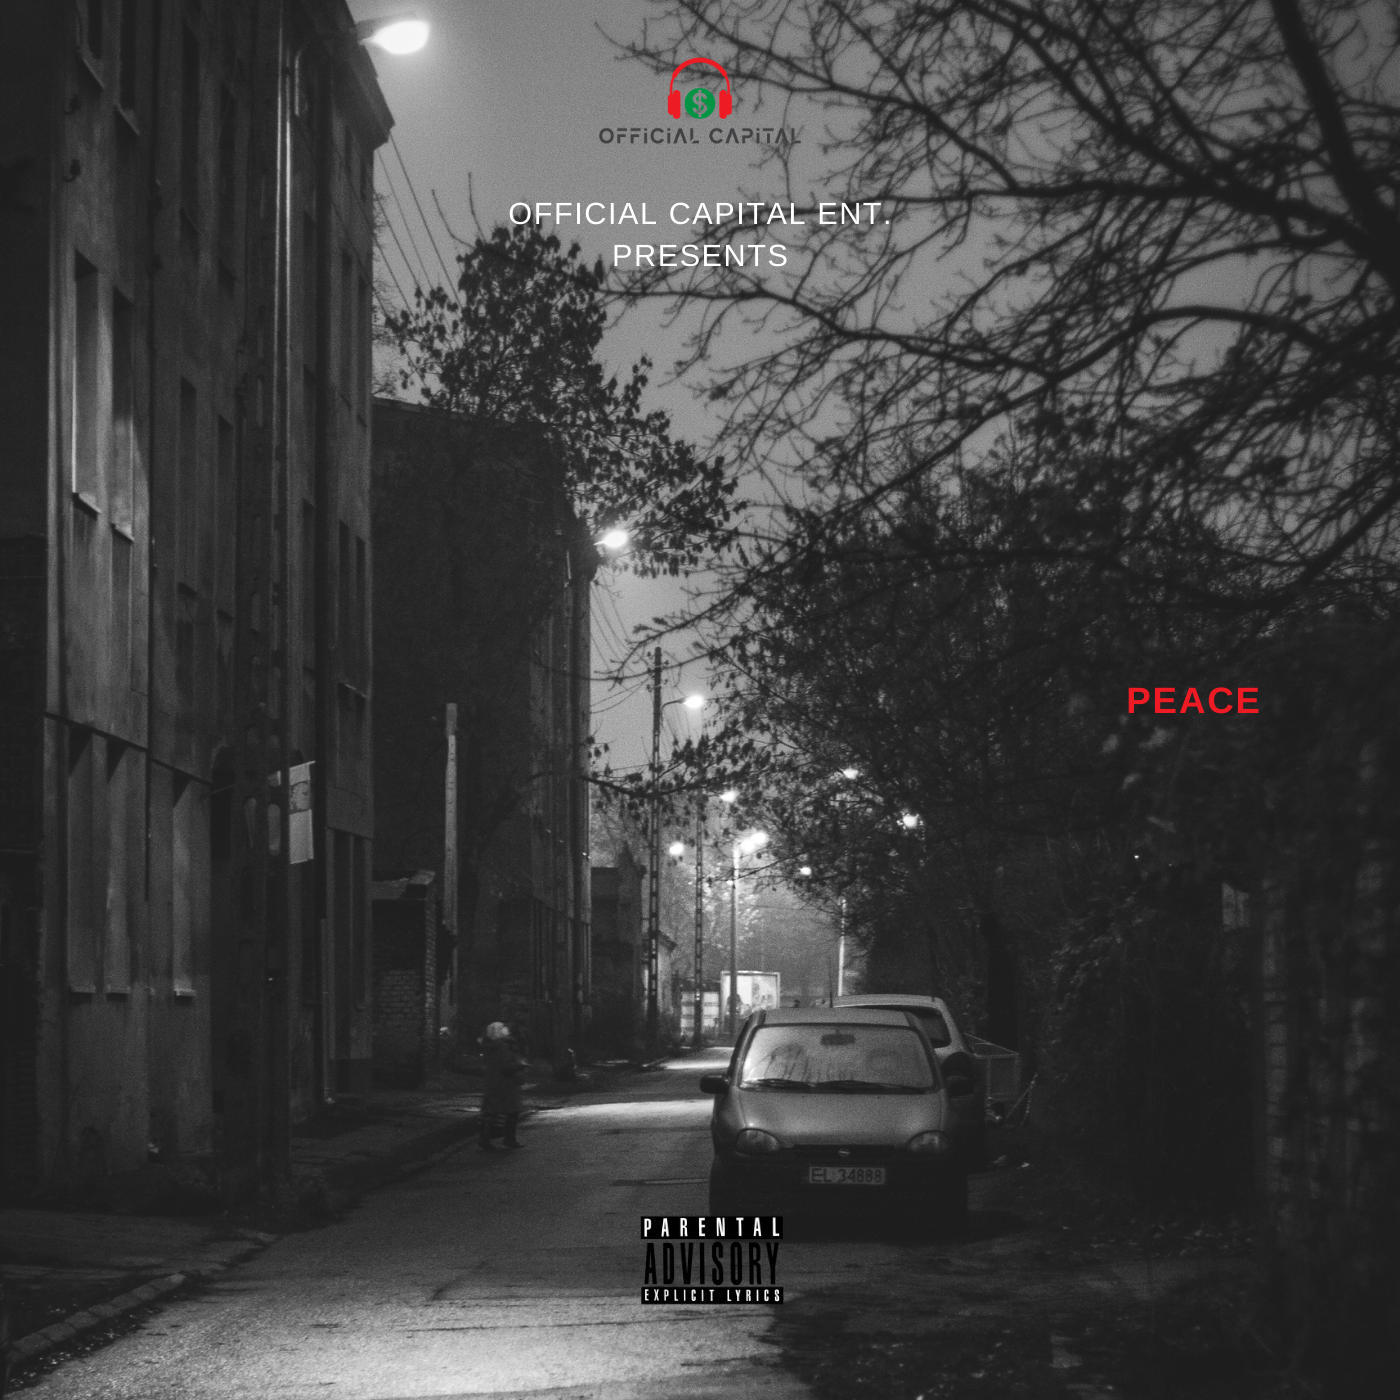 L.A Rapper Aus10 Returns With New Single “PEACE”